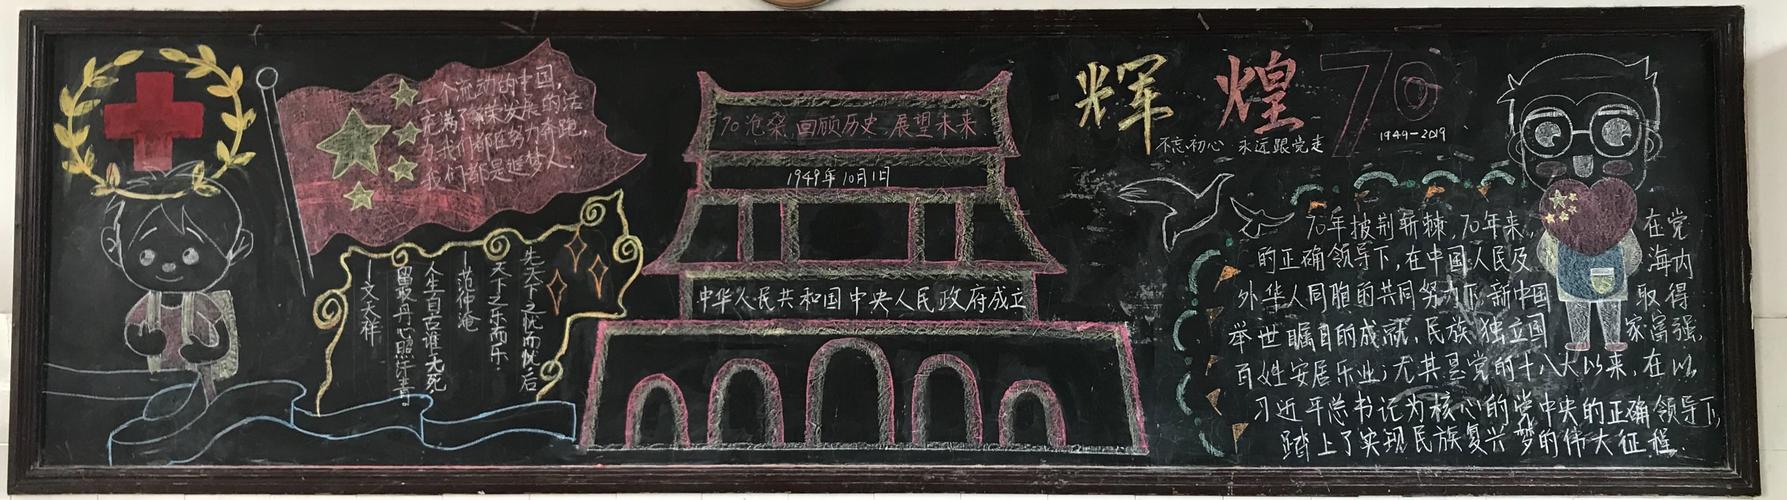 祖国母亲生日快乐石港中学迎国庆主题黑板报作品展